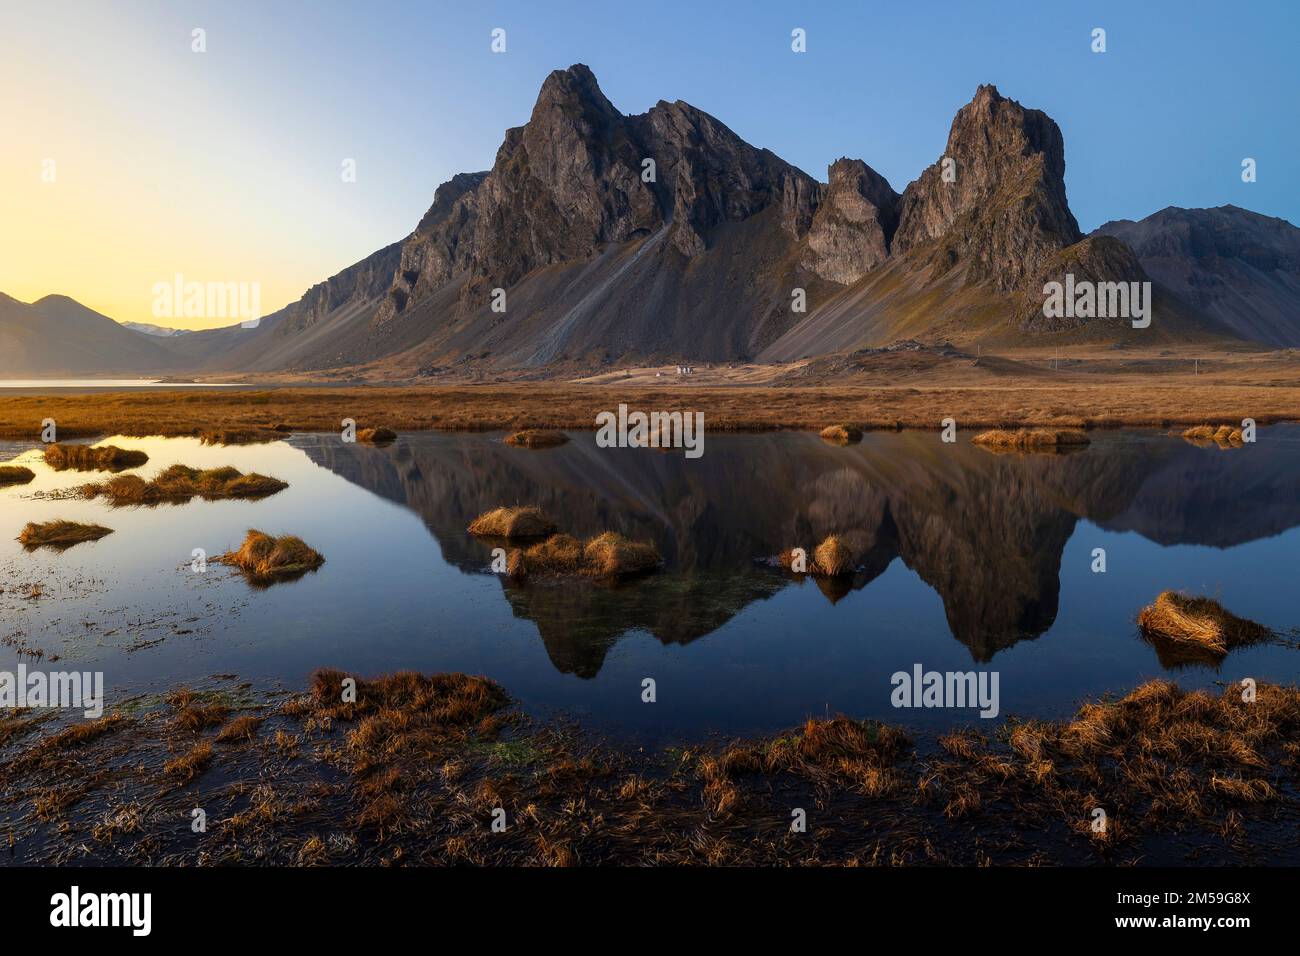 Ein Mann beobachtet, wie das Eystrahorn bei Sonnenuntergang reflektiert wird, Krossanesfjall, Djupivogur, Austurland, Island, Nordeuropa Stockfoto